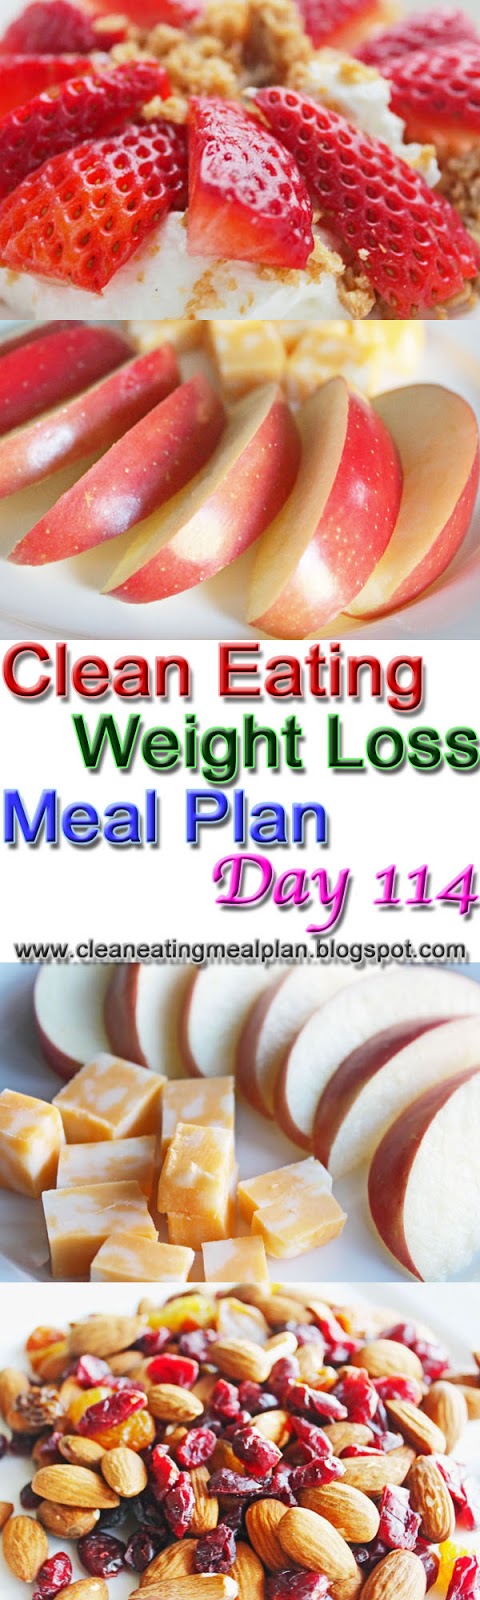 clean eating meal plan 114